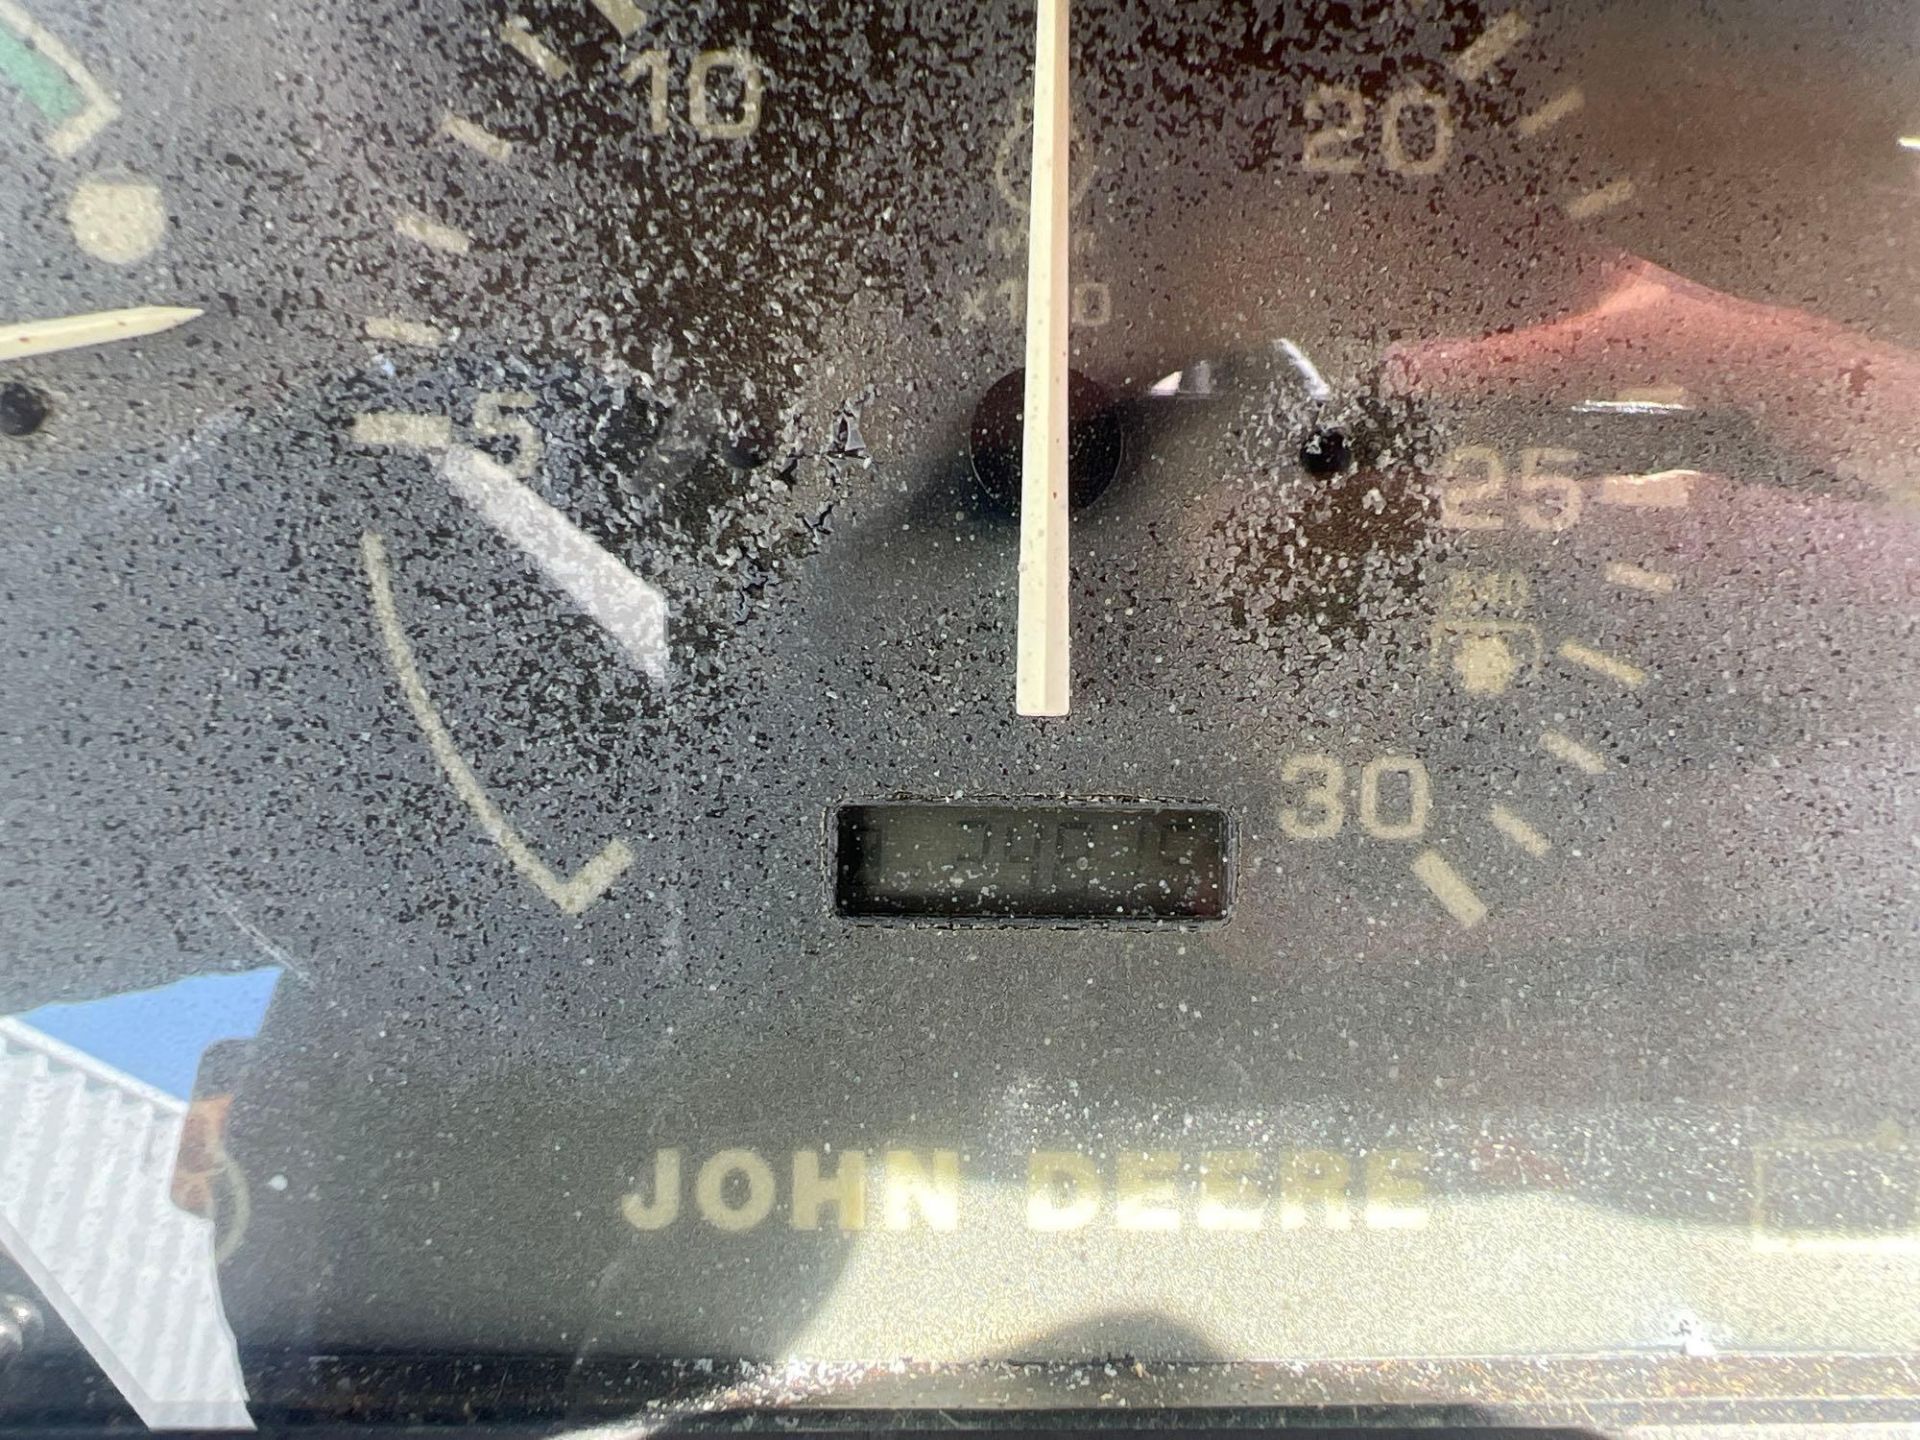 1999 John Deere 4500 Tractor - Image 5 of 16